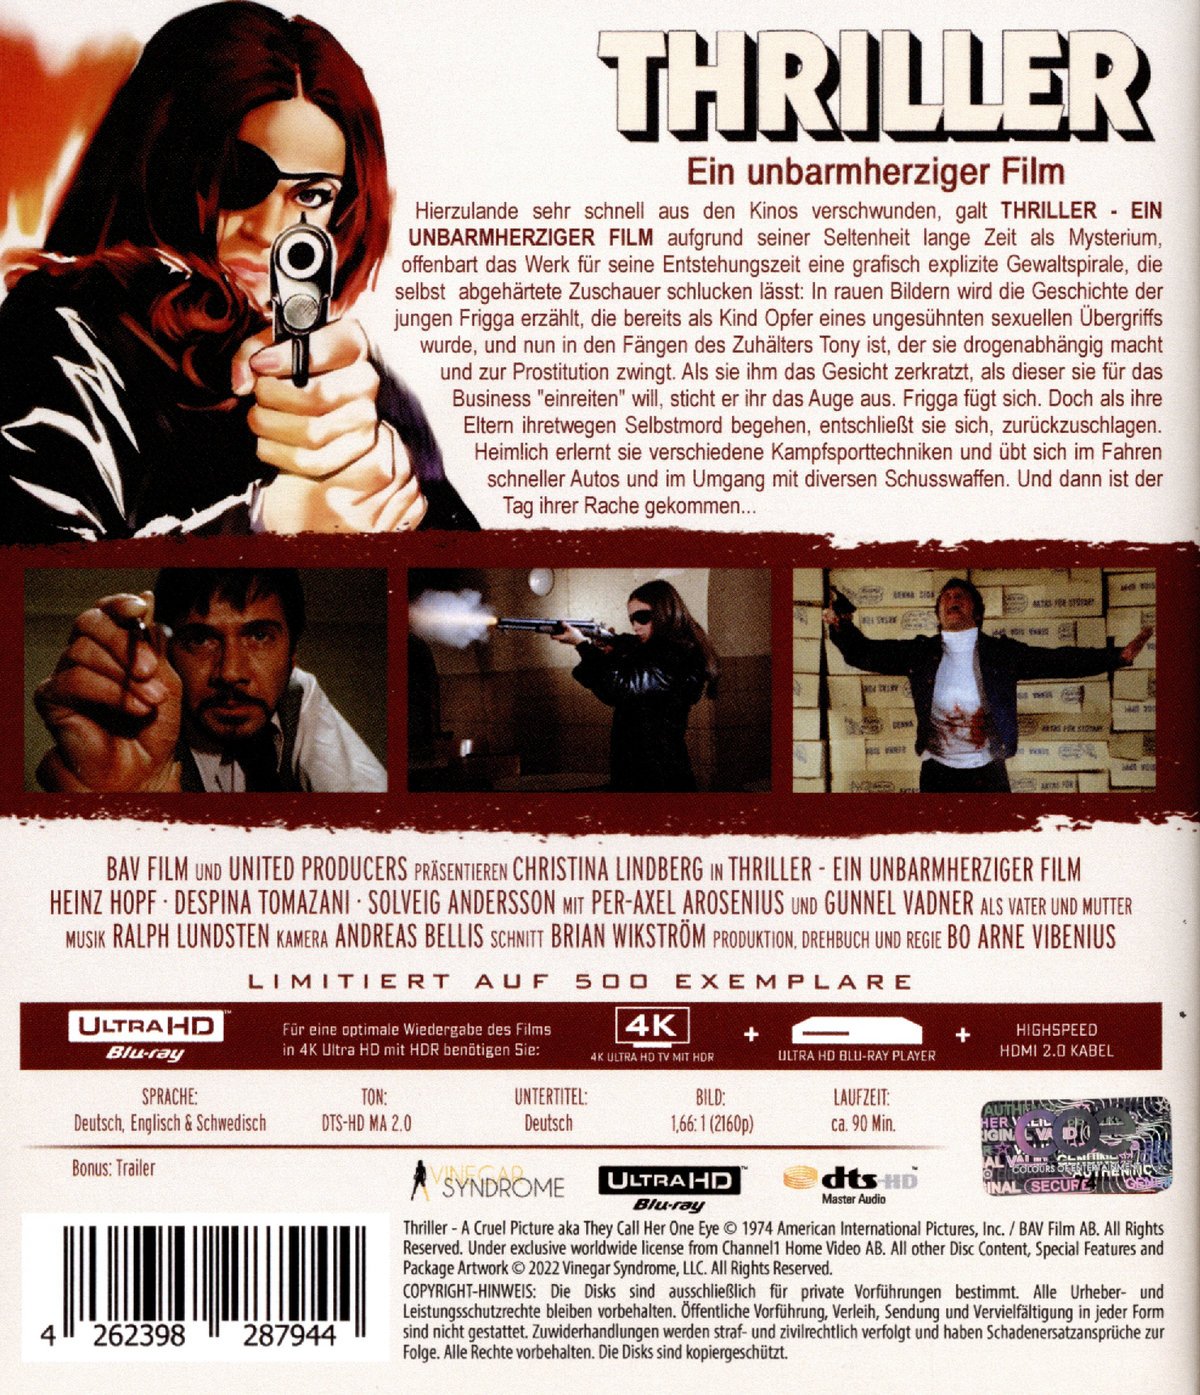 THRILLER - Ein unbarmherziger Film - Kinofassung  (Blu-ray 4K Ultra HD)